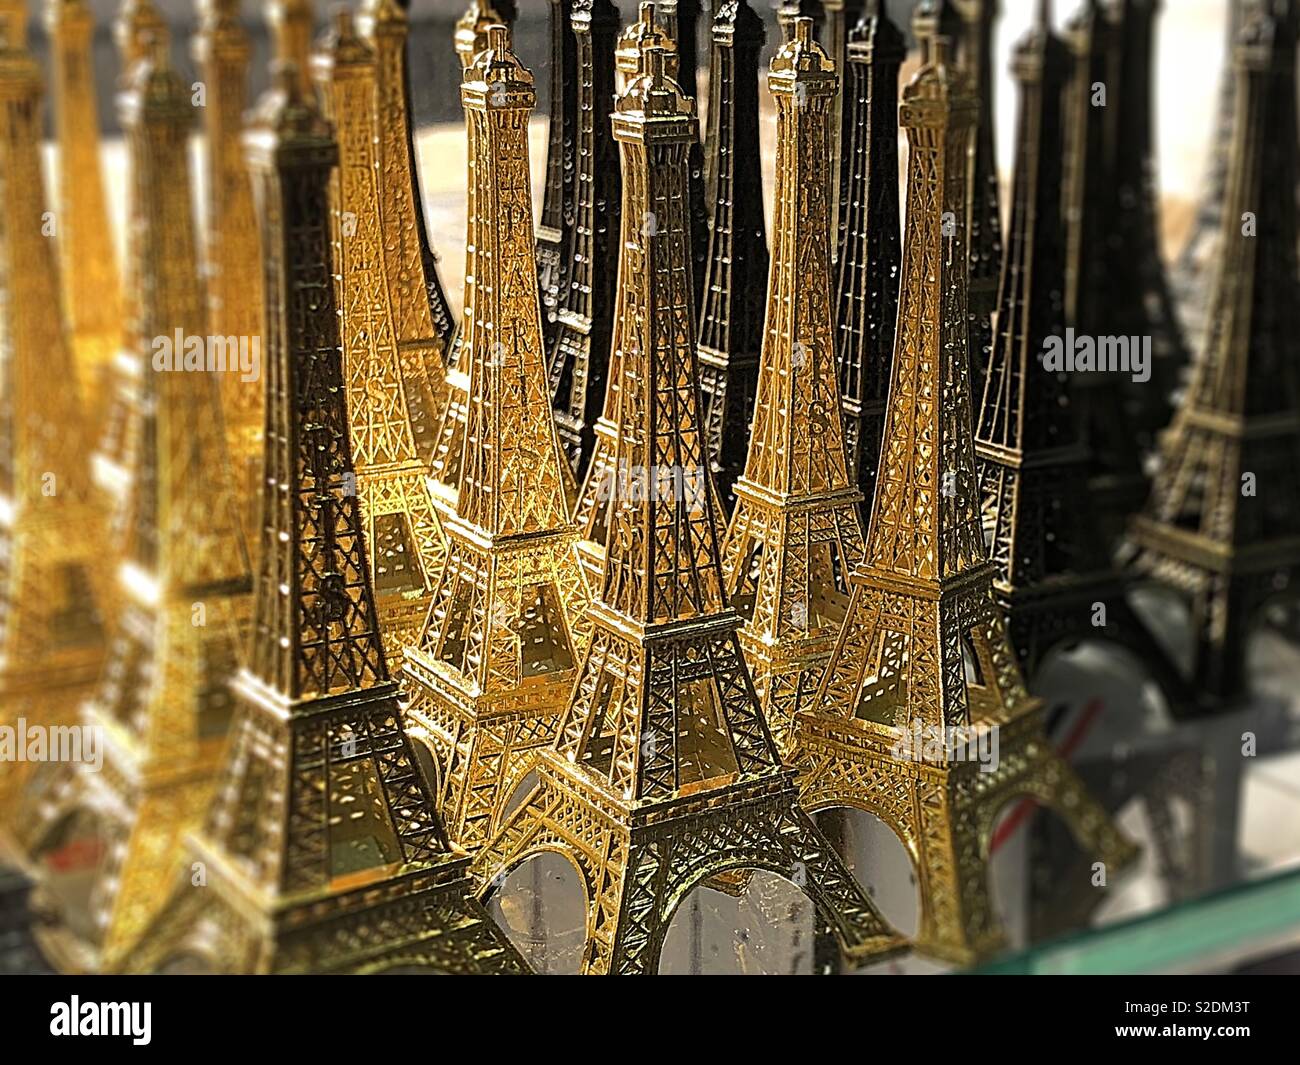 Souvenir touristique de la Tour Eiffel, Paris Banque D'Images